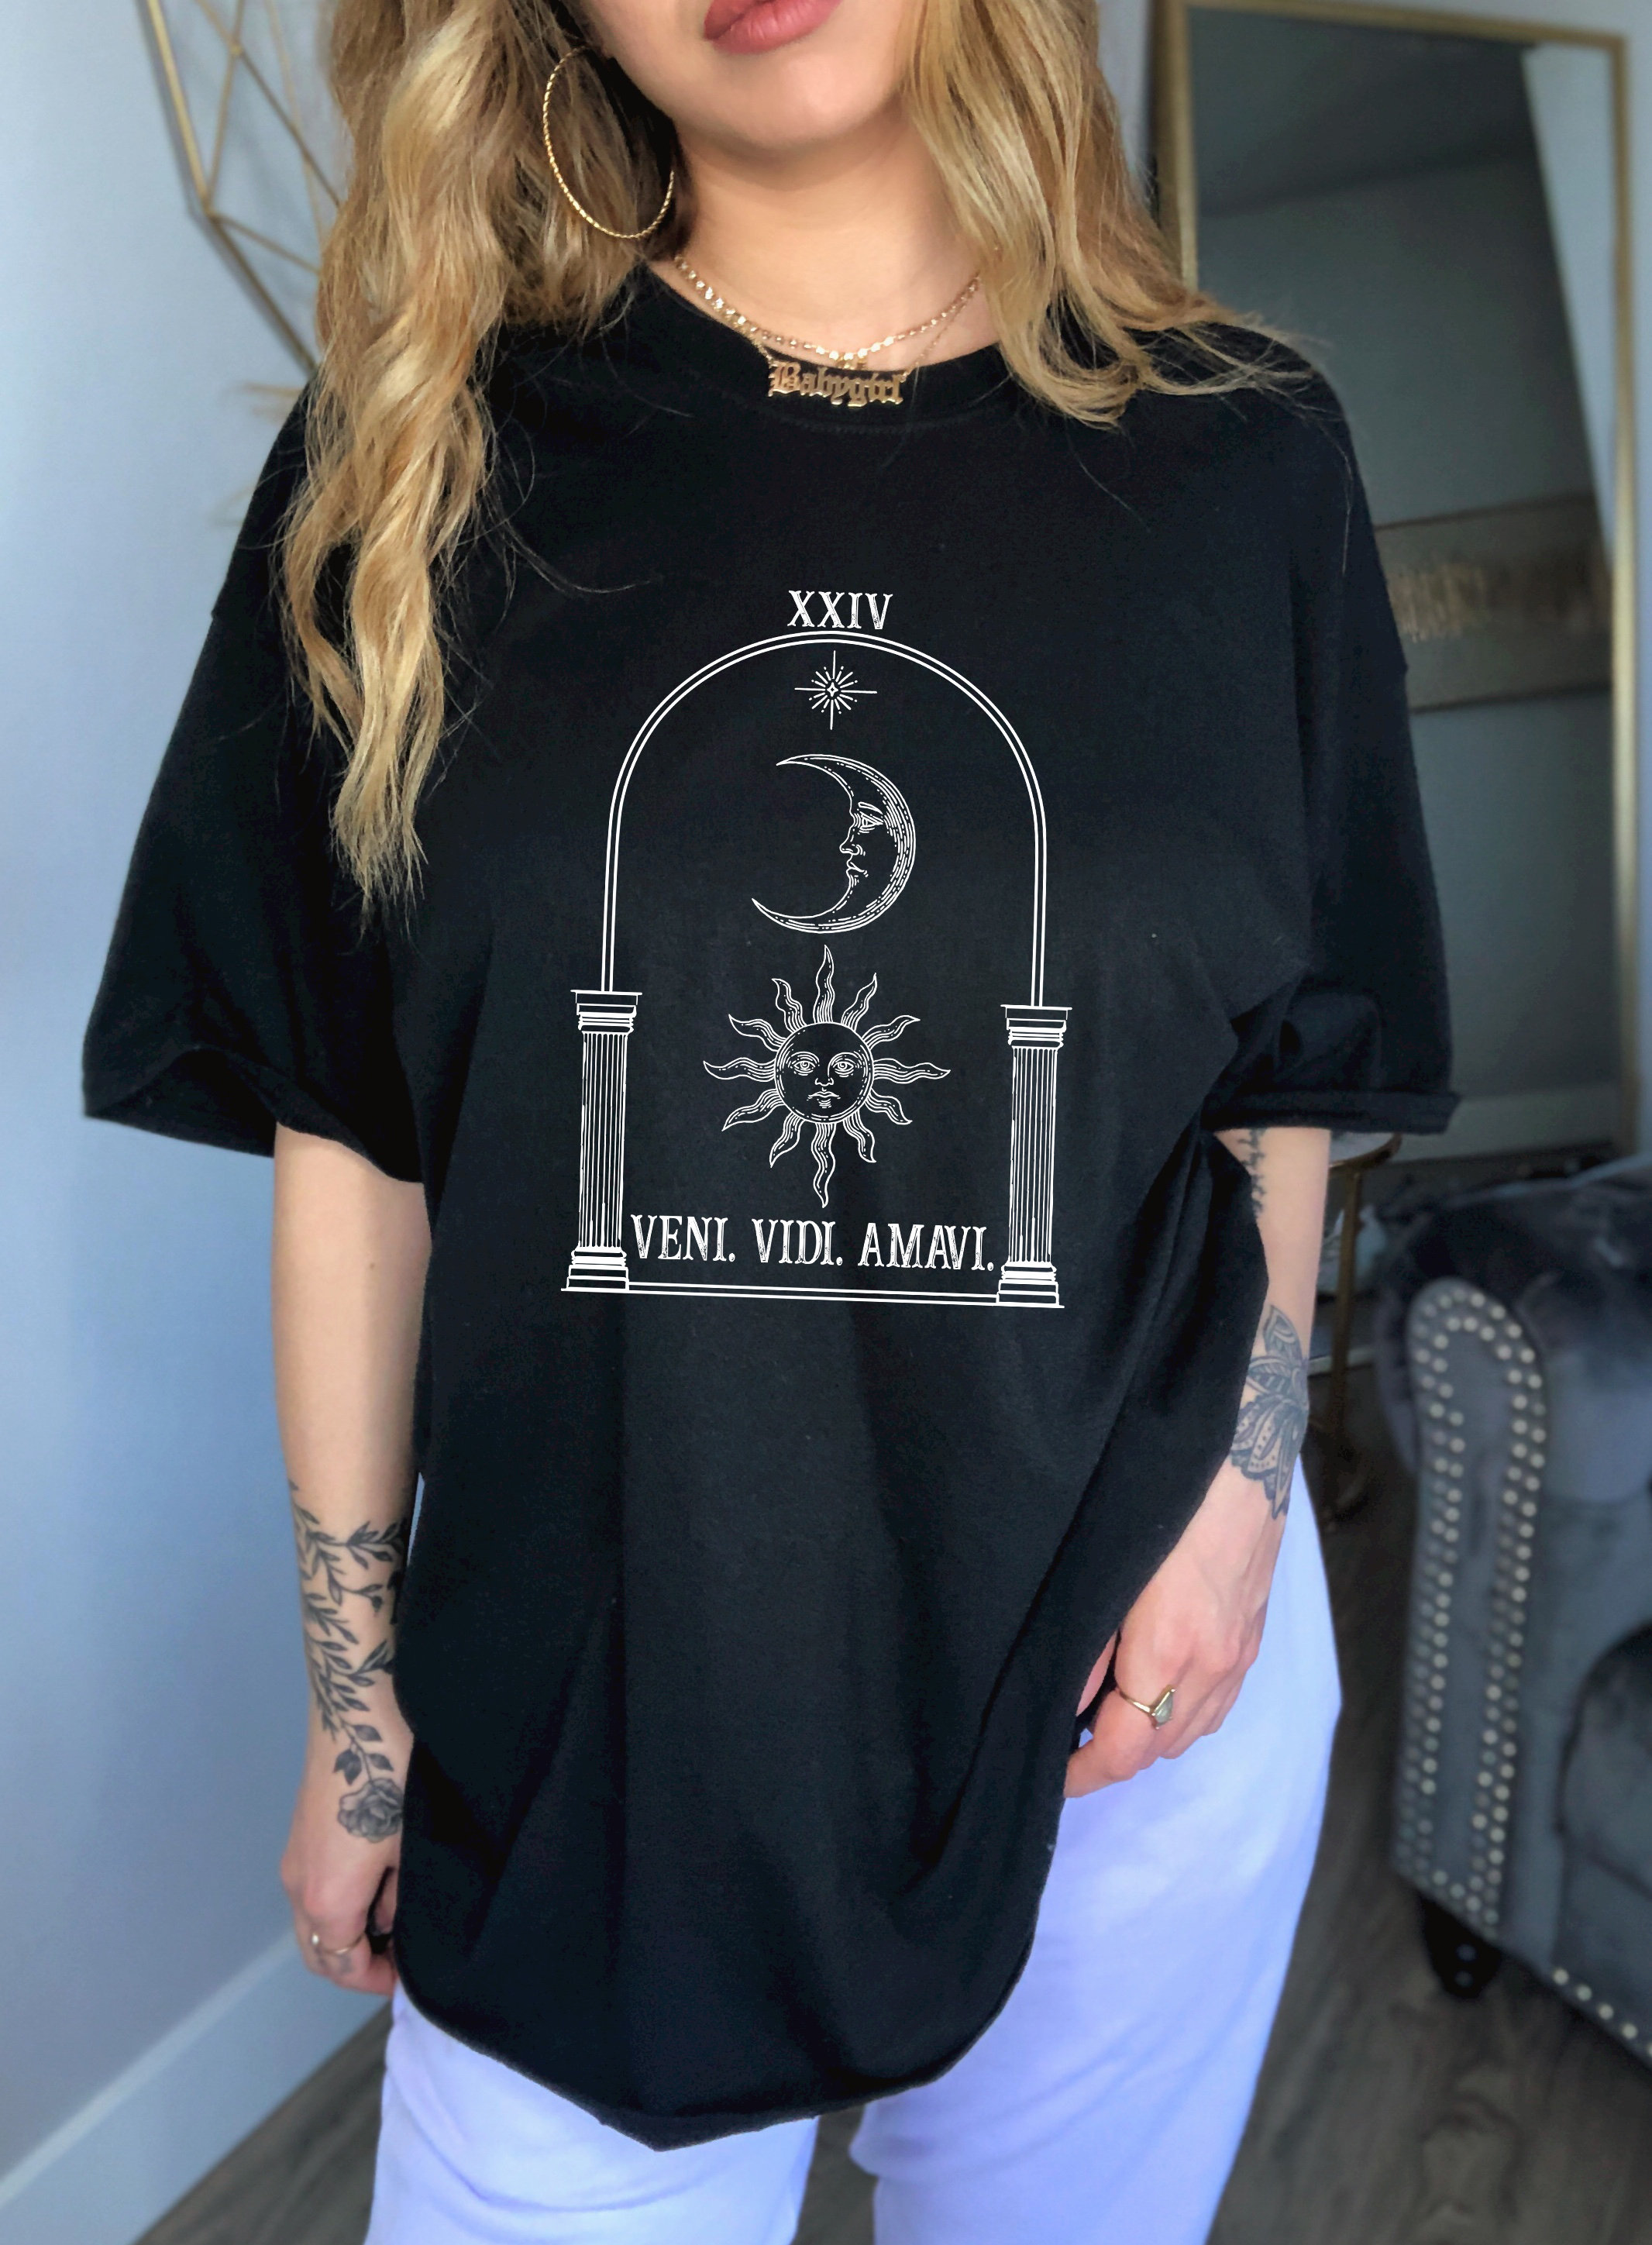 Dark Academia Clothing Light Shirt Alt Clothing Indie | Etsy